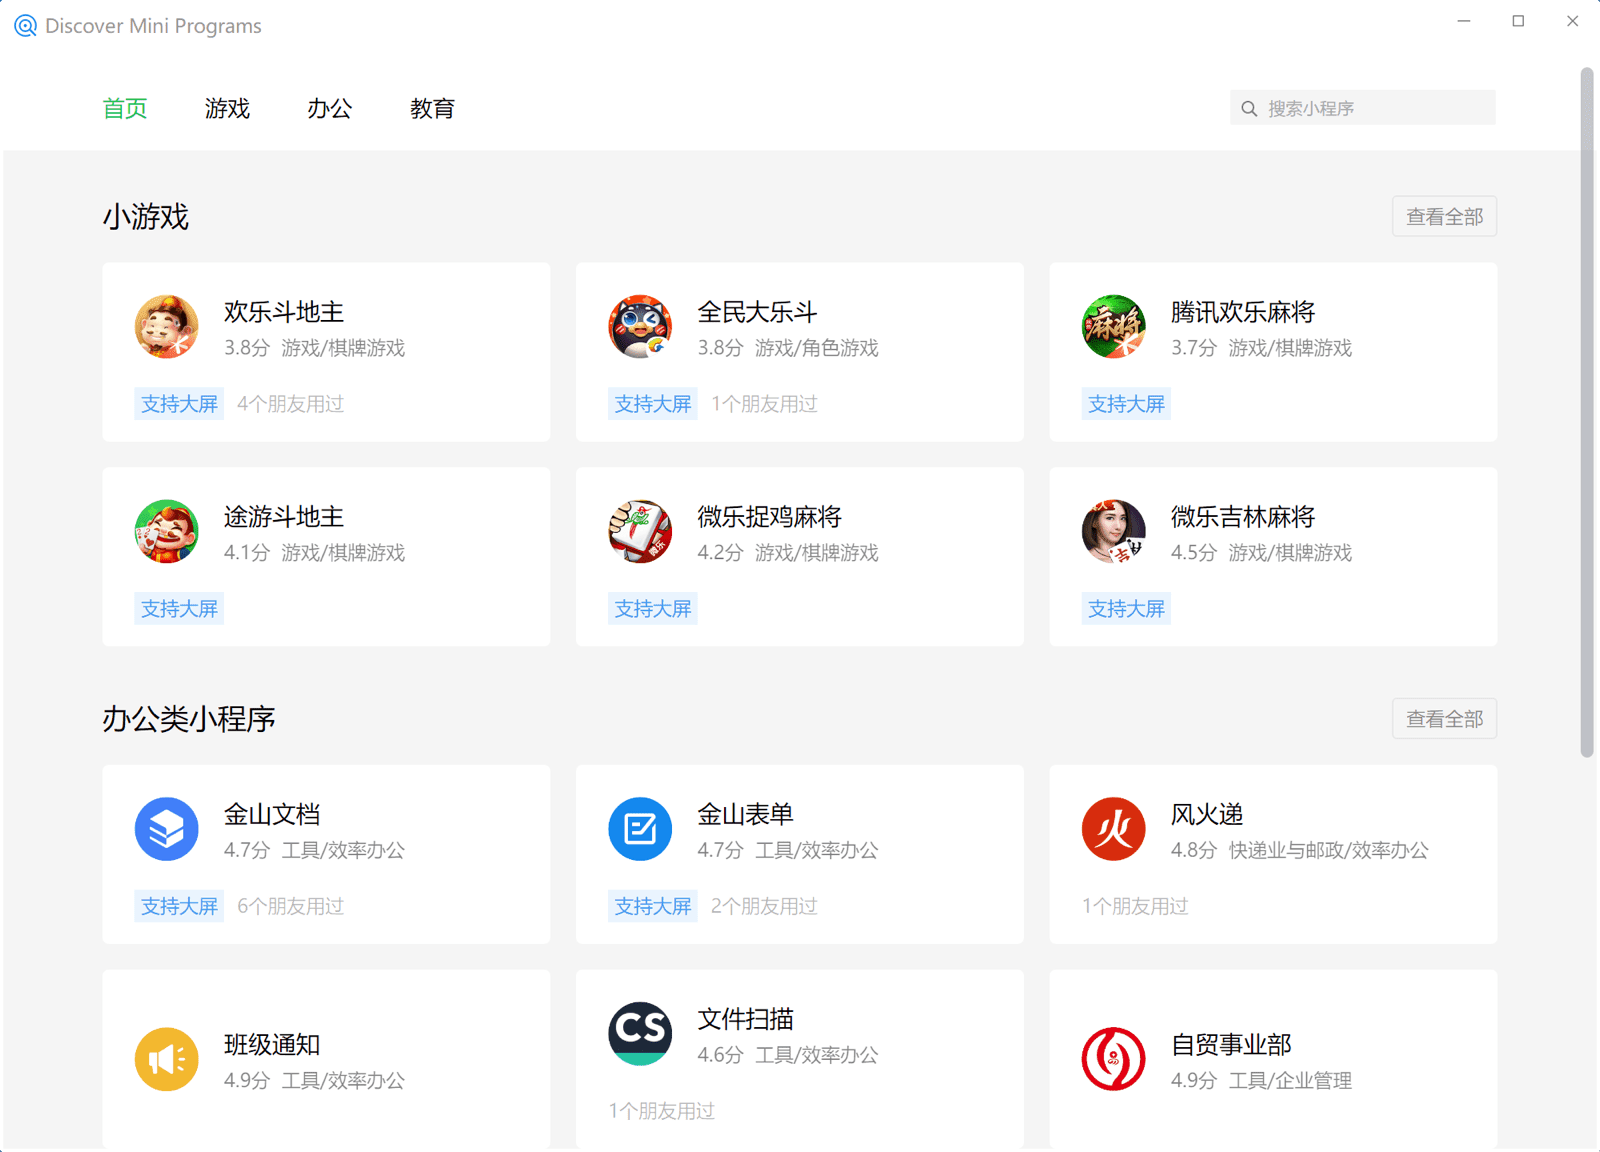 WeChat Windows istemcisindeki mini uygulama arama özelliği; oyunlar, iş, eğitim vb. kategorilerde listelenen mini uygulamaları gösterir.